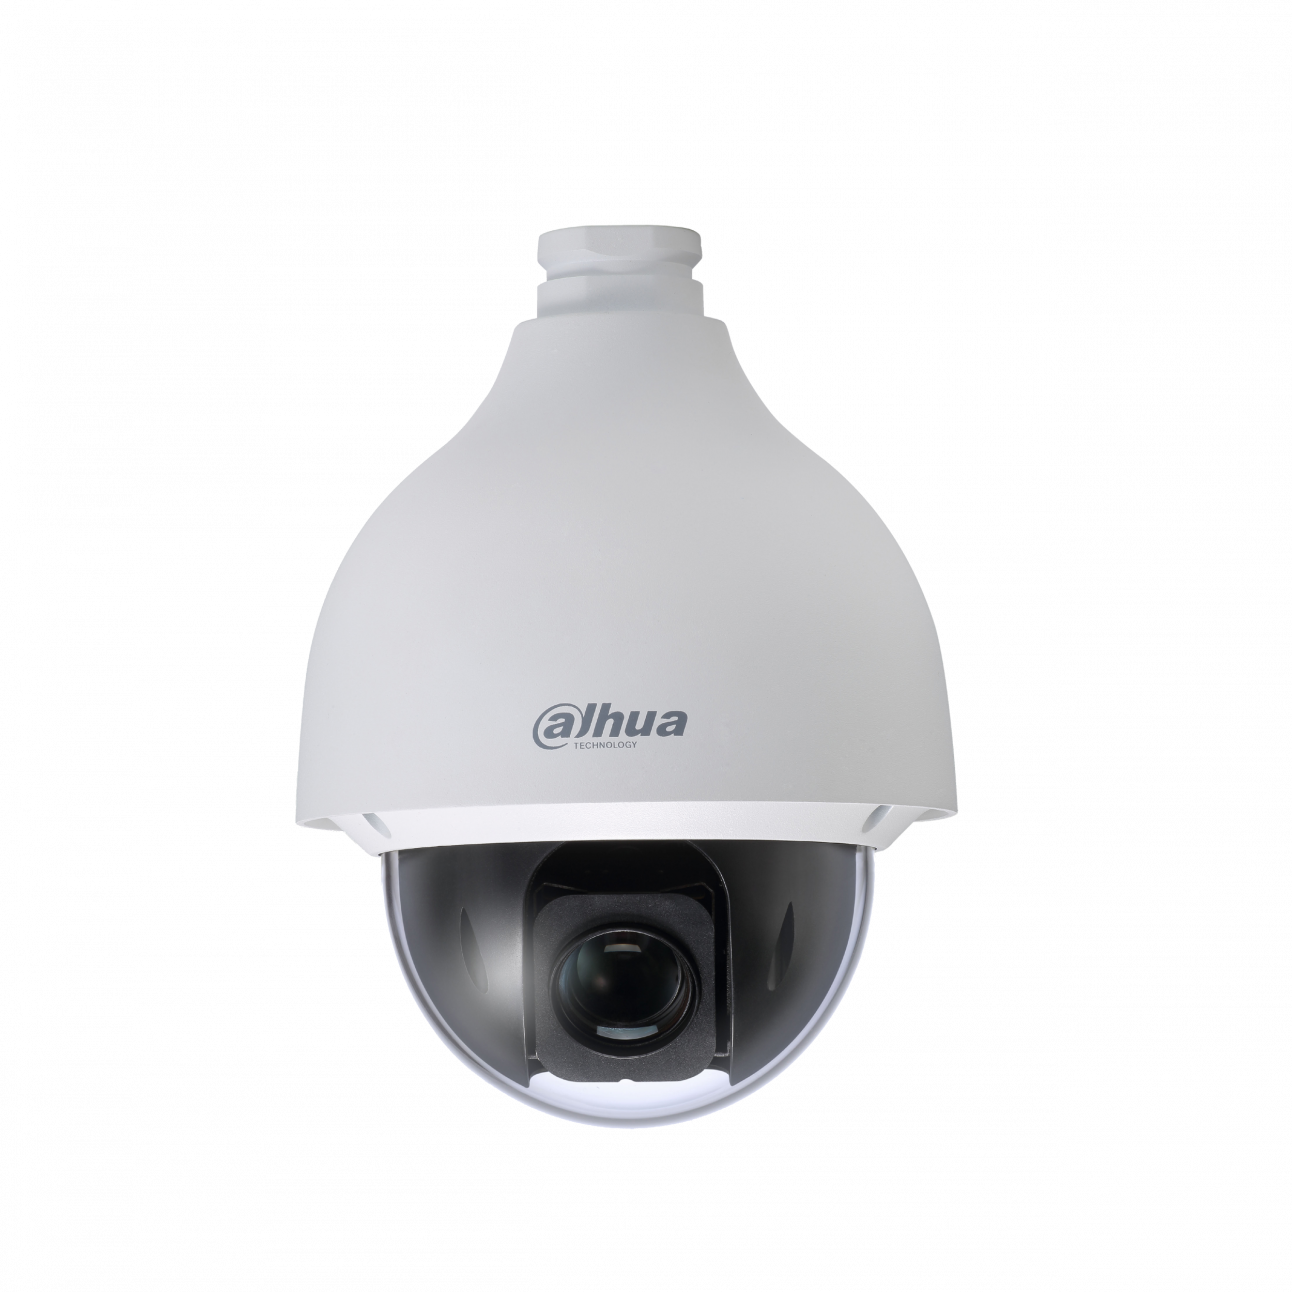 IP камера Dahua DH-SD50225U-HNI скоростная поворотная 2Мп, 50к/с при разрешении 1080p, 25х опт. увелич., PoE+, IP66, IK10